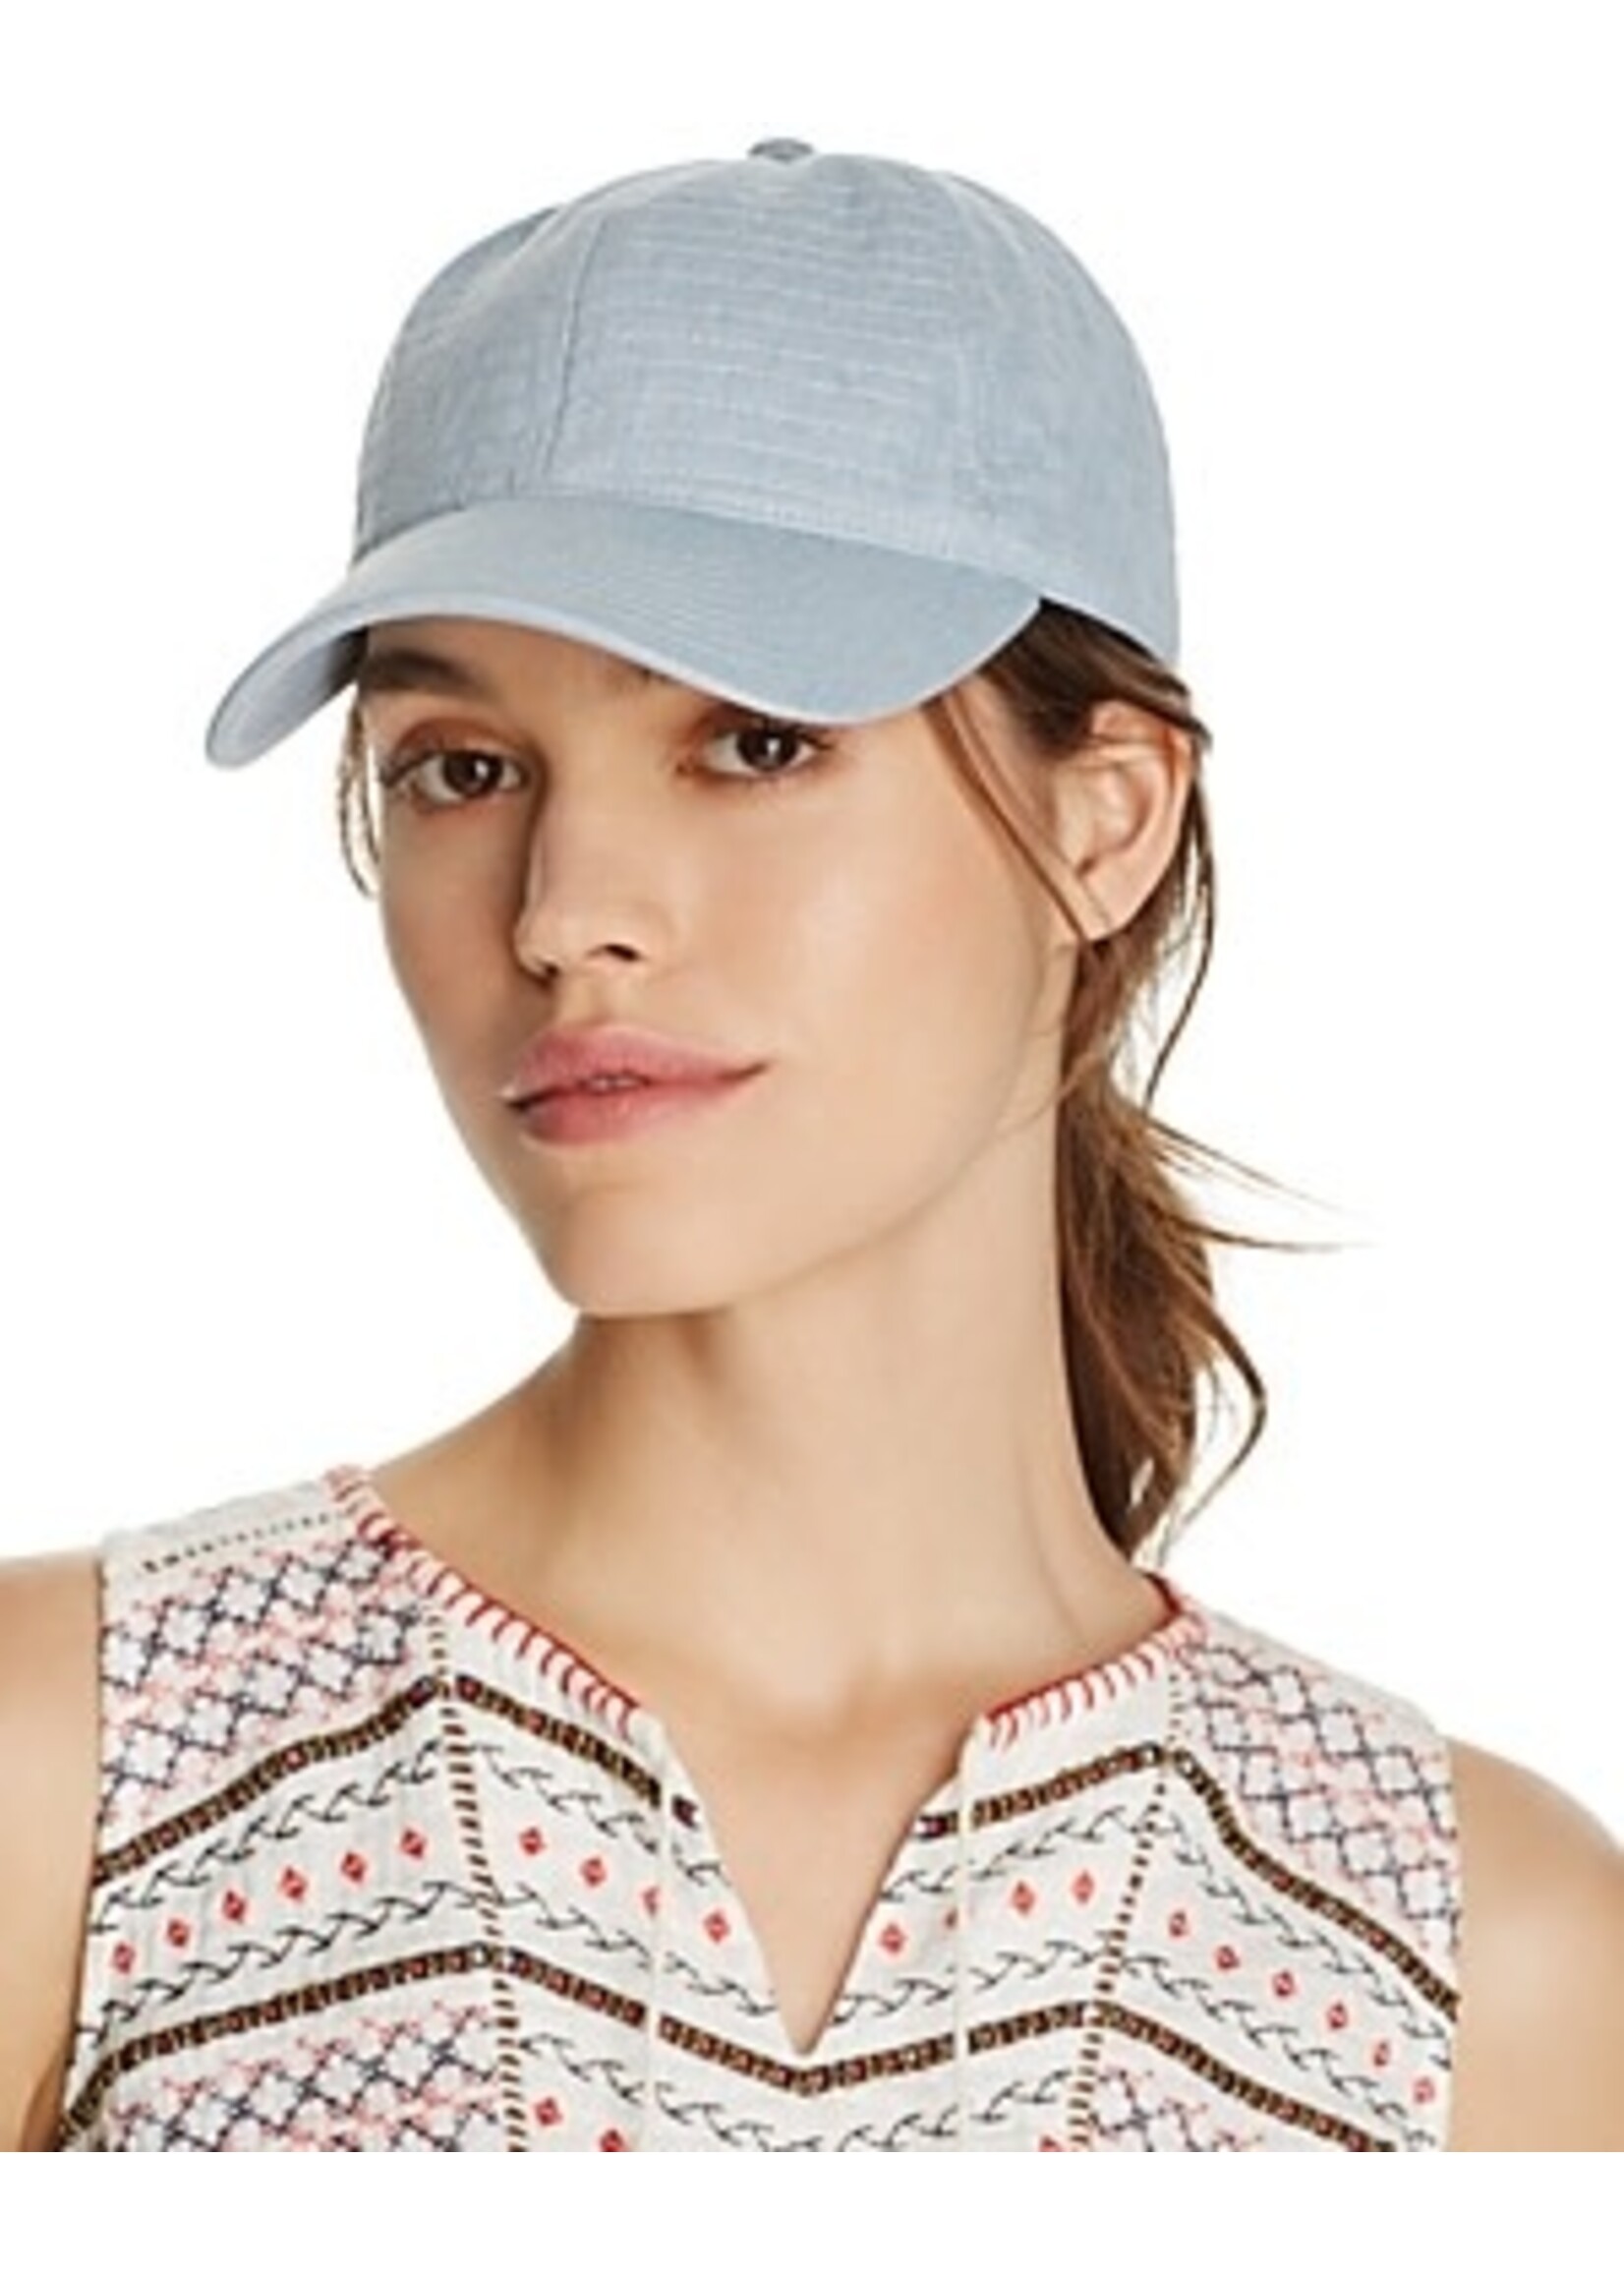 august hats August hat Women's Baseball Cap, OS